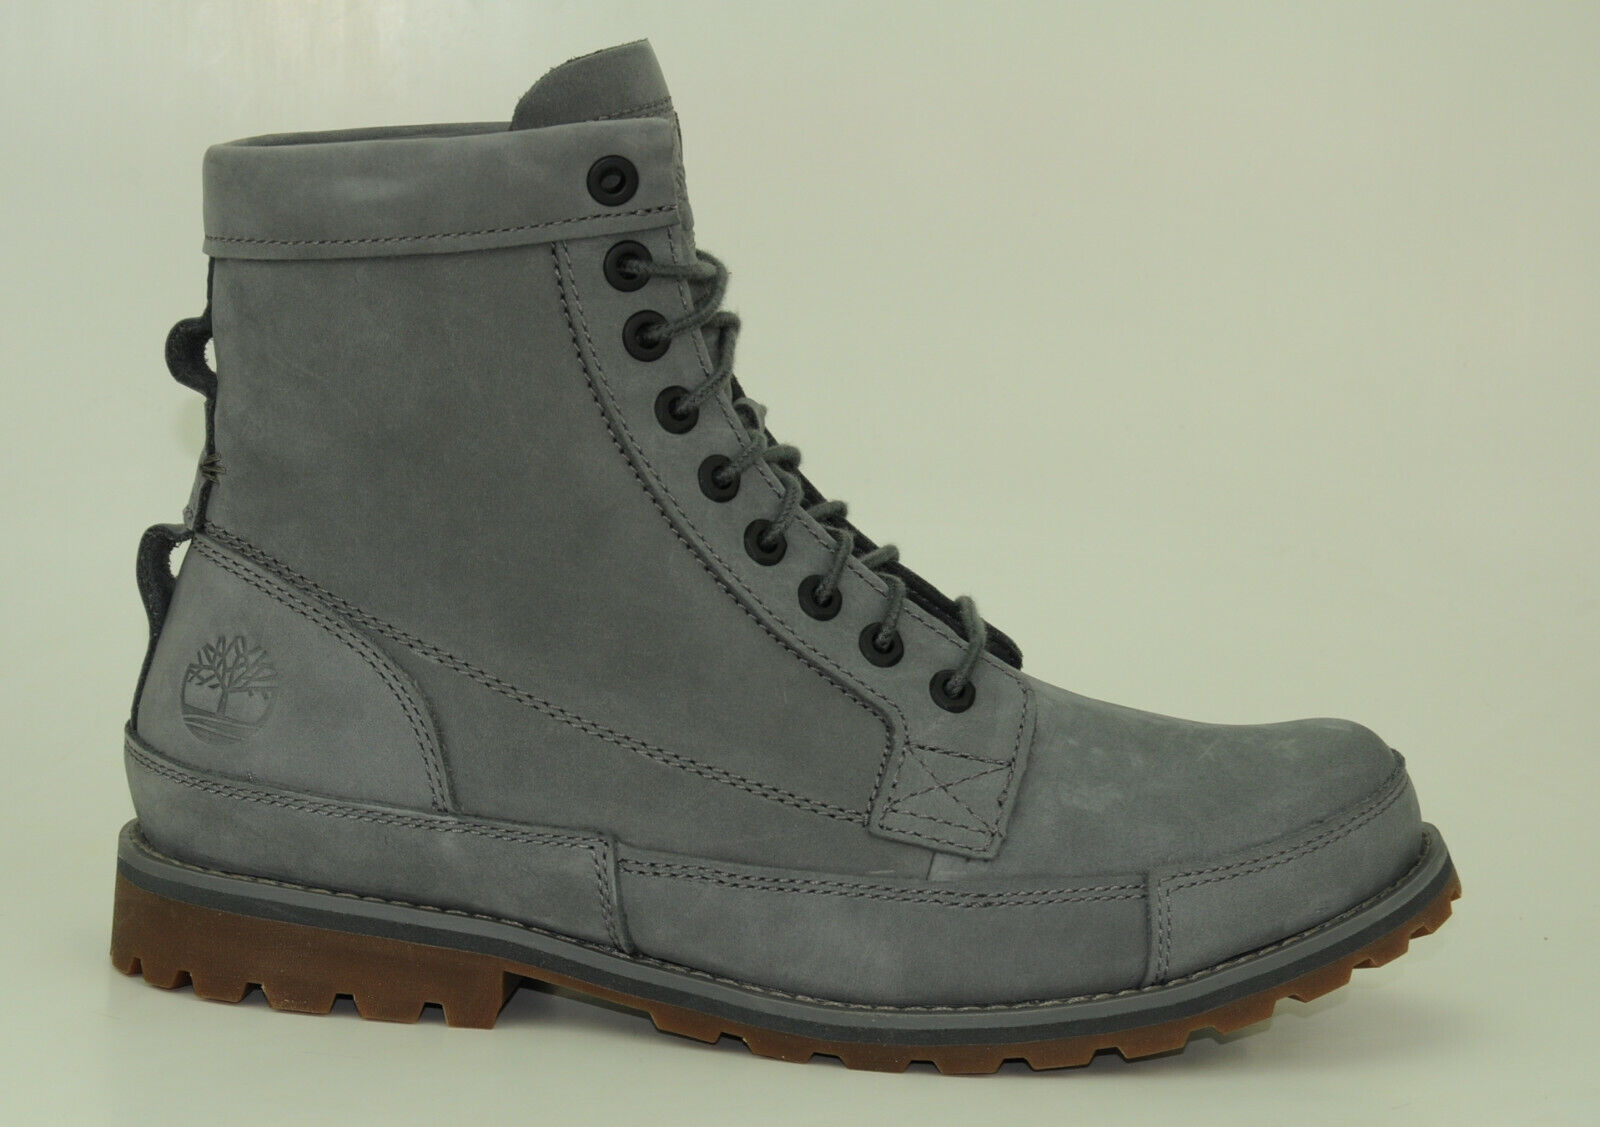 Timberland Originals 6 Inch Boots Schnürstiefel Herren Schuhe Stiefel A41C6